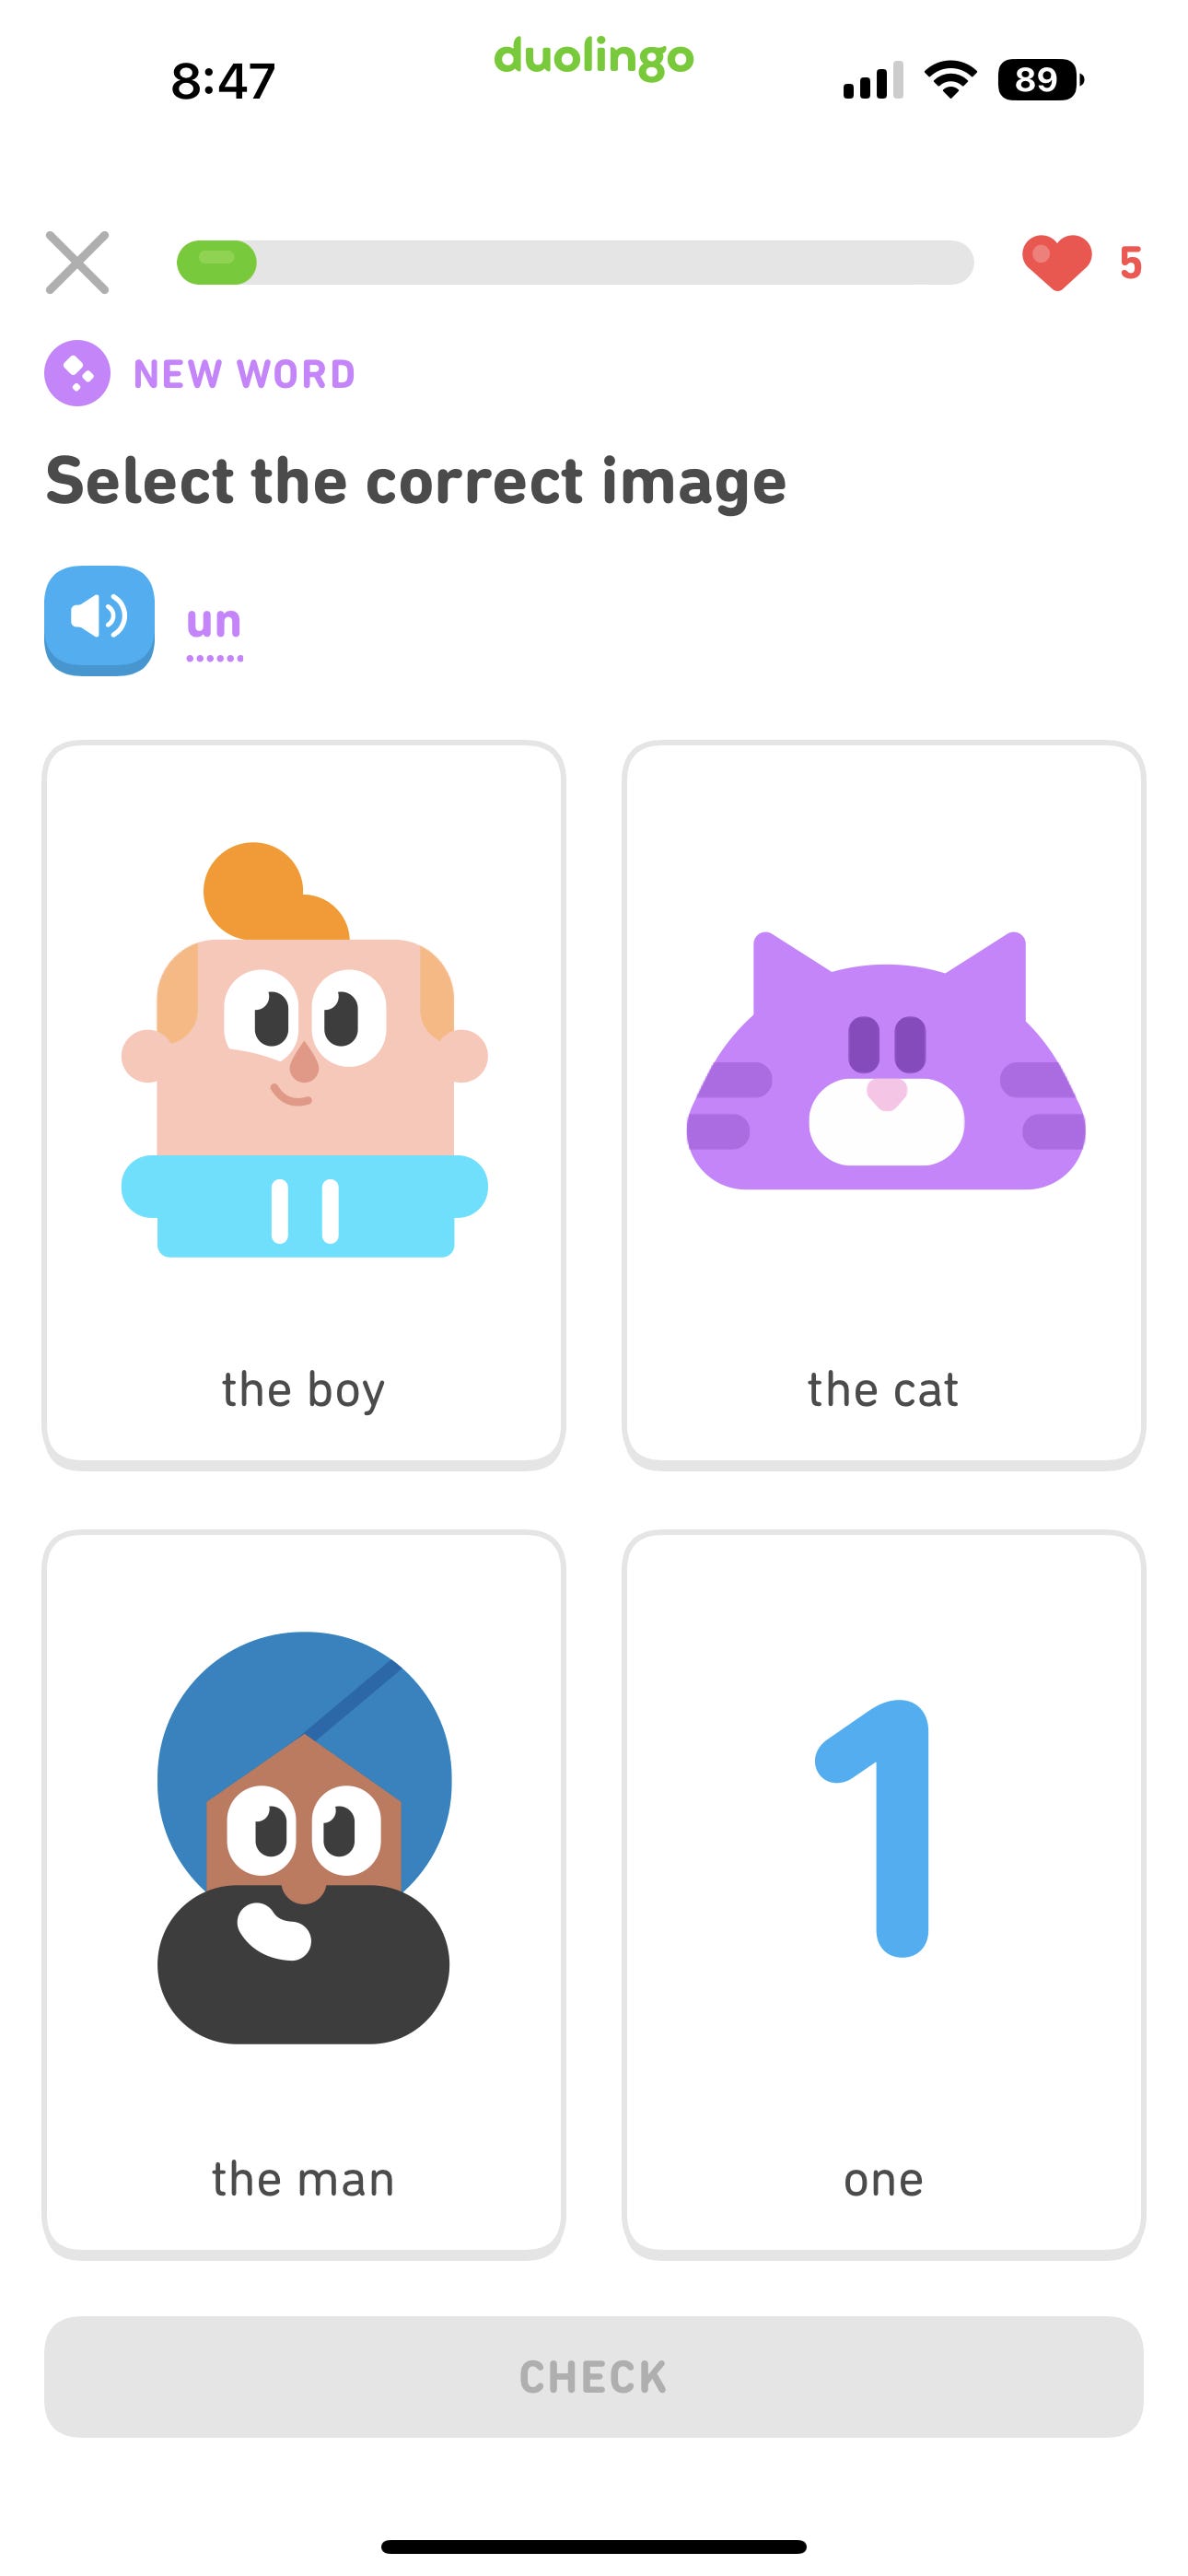 L'app per l'apprendimento delle lingue Duolingo mostra quattro illustrazioni che rappresentano parole in spagnolo affinché l'utente corrisponda al termine corretto.